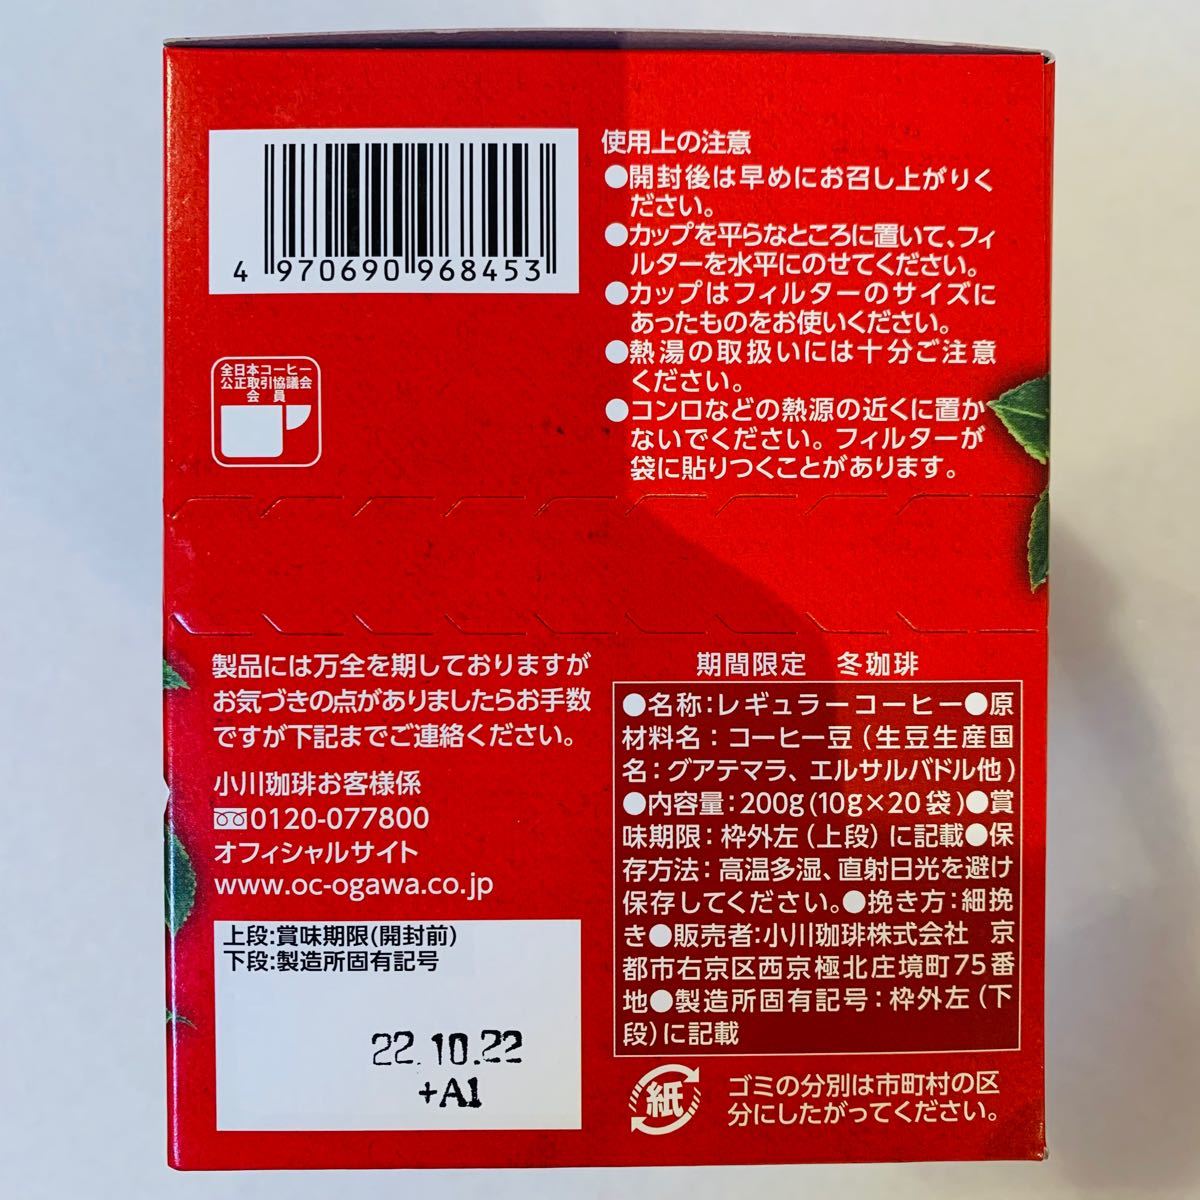 【期間限定】 小川珈琲 冬珈琲 ドリップコーヒー 120杯分 10g×20袋×6